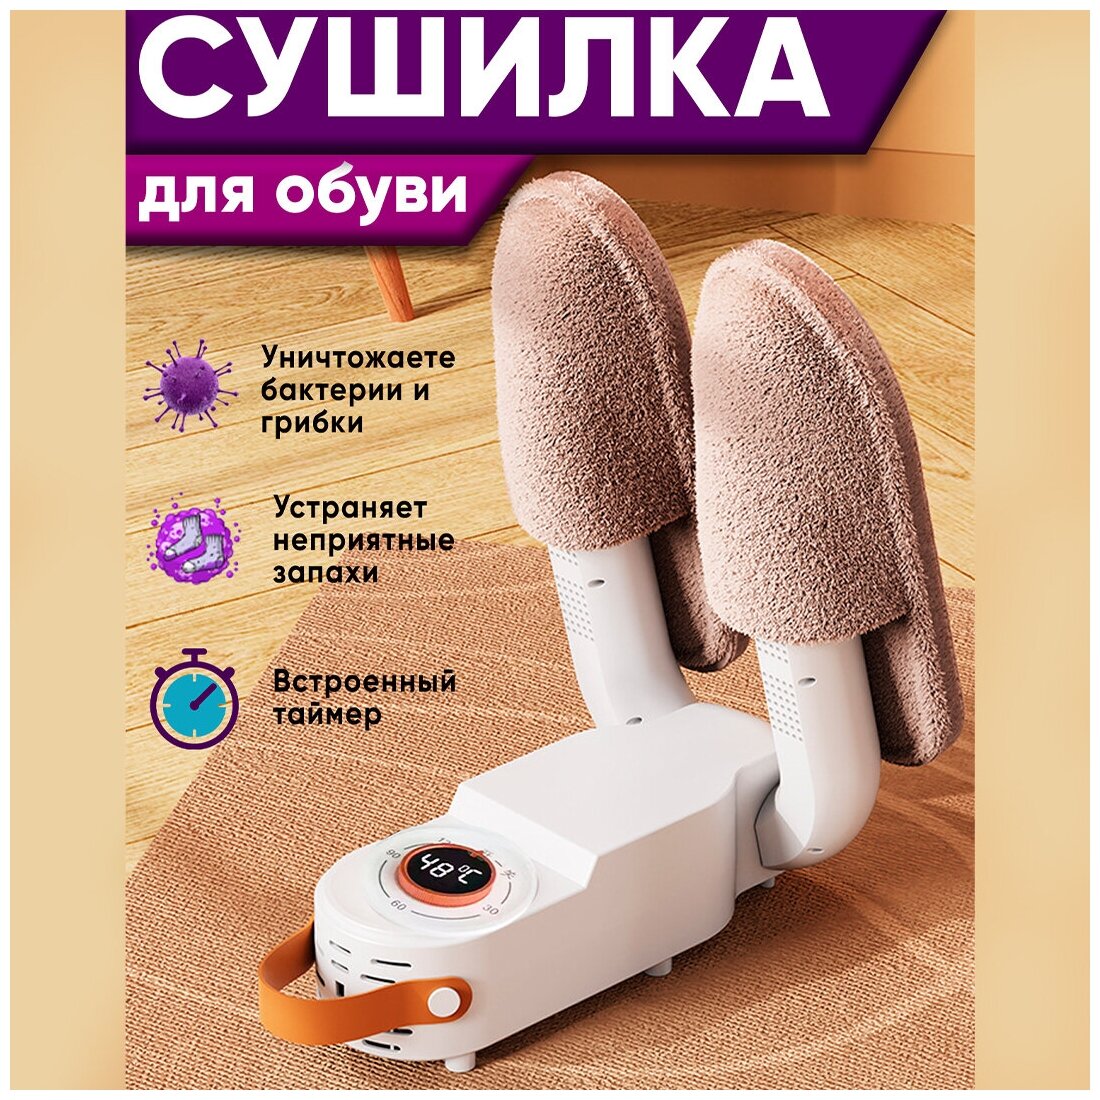 Антибактериальная электрическая сушилка для обуви 13W. Ультрафиолетовая сушка для ботинок, тапочек и сапог.